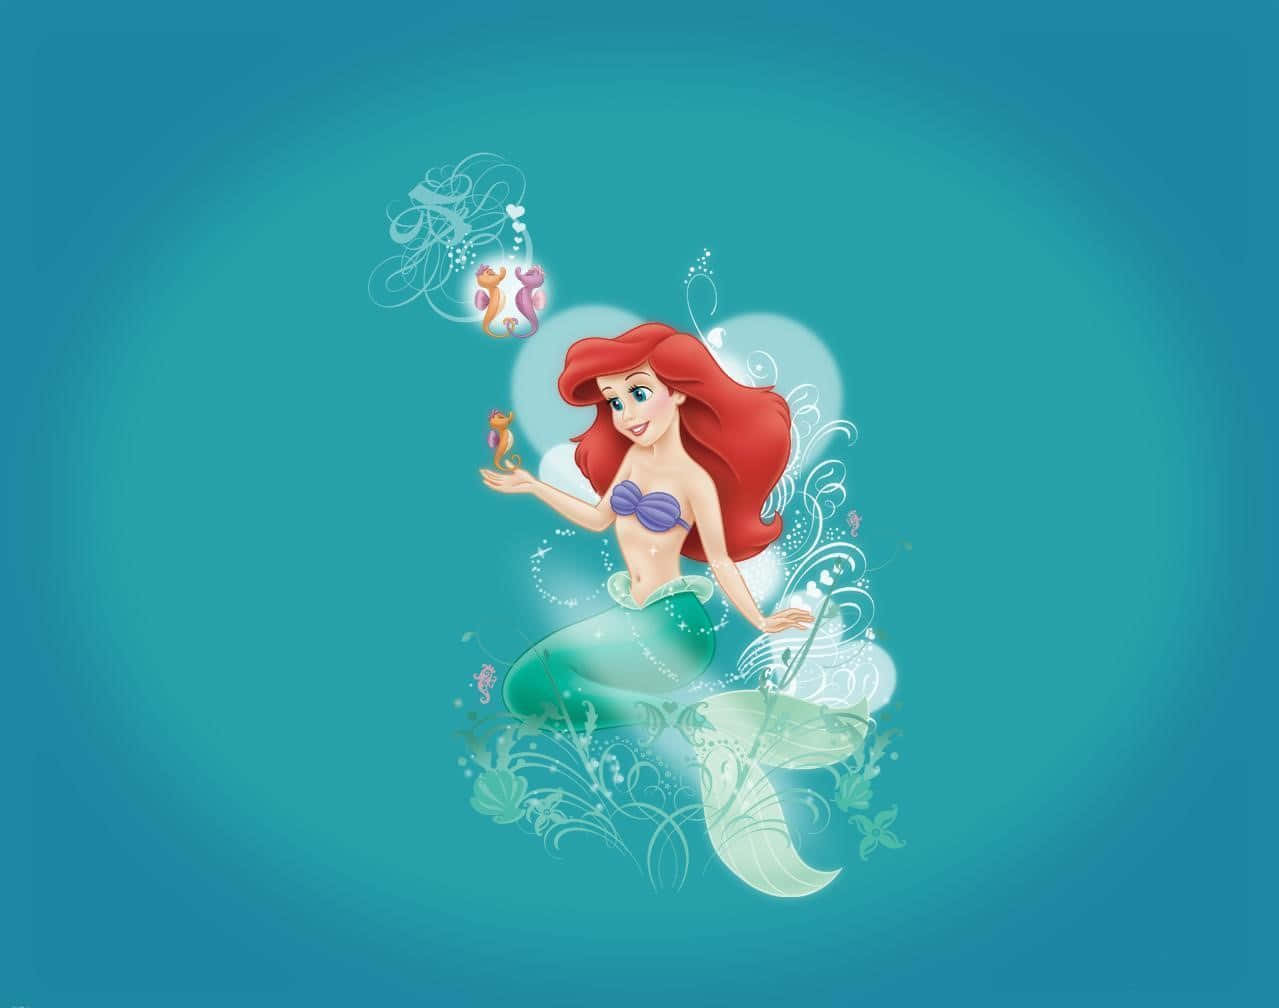 Disneyprinsessan Ariel Från Lilla Sjöjungfrun. Wallpaper